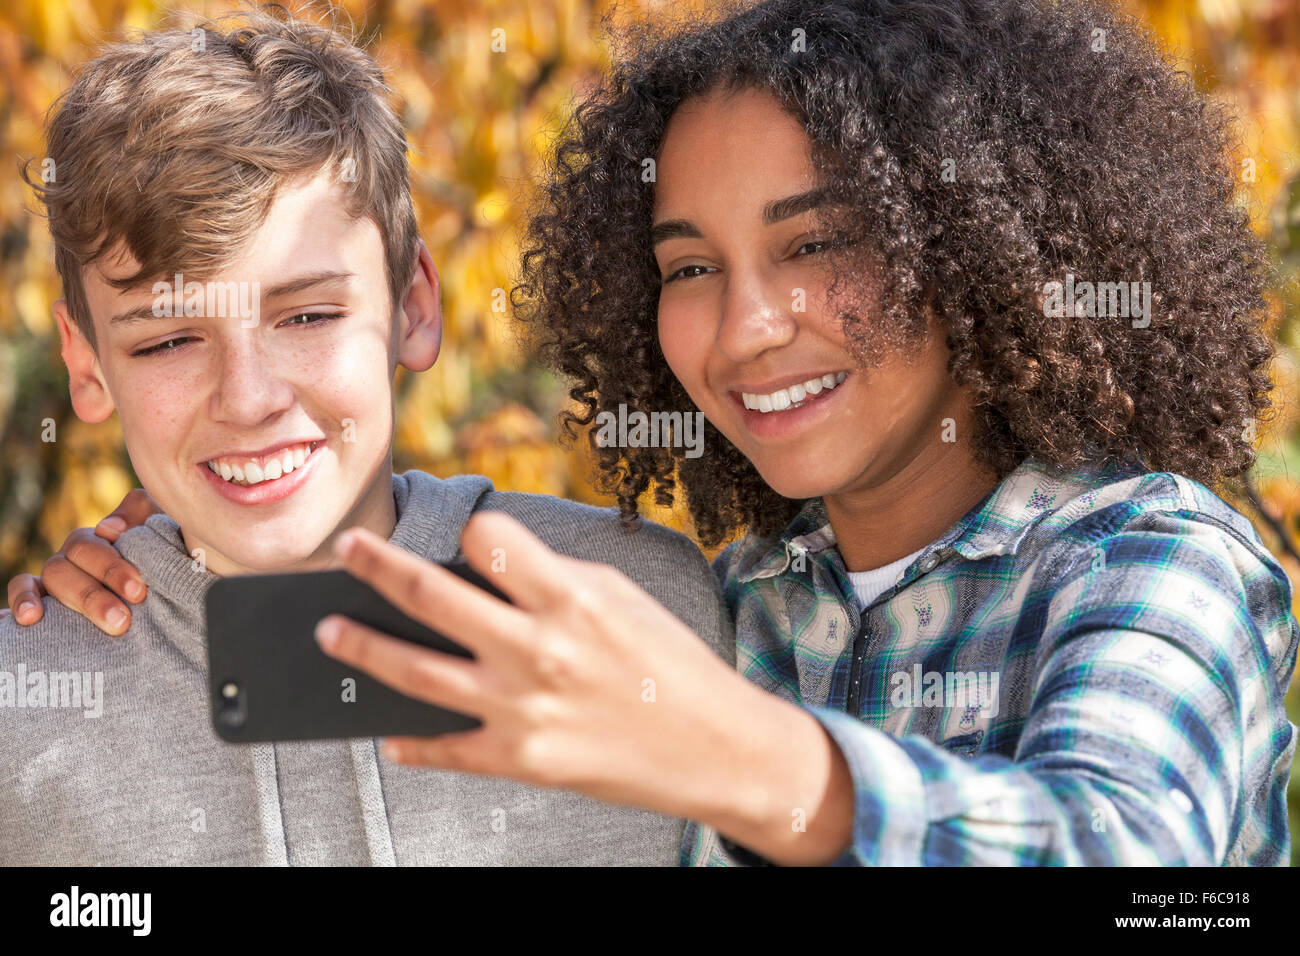 Razza mista gruppo due felici i bambini adolescenti americano africano ragazza ragazzo caucasico ridere insieme prendendo selfie sul telefono cellulare Foto Stock